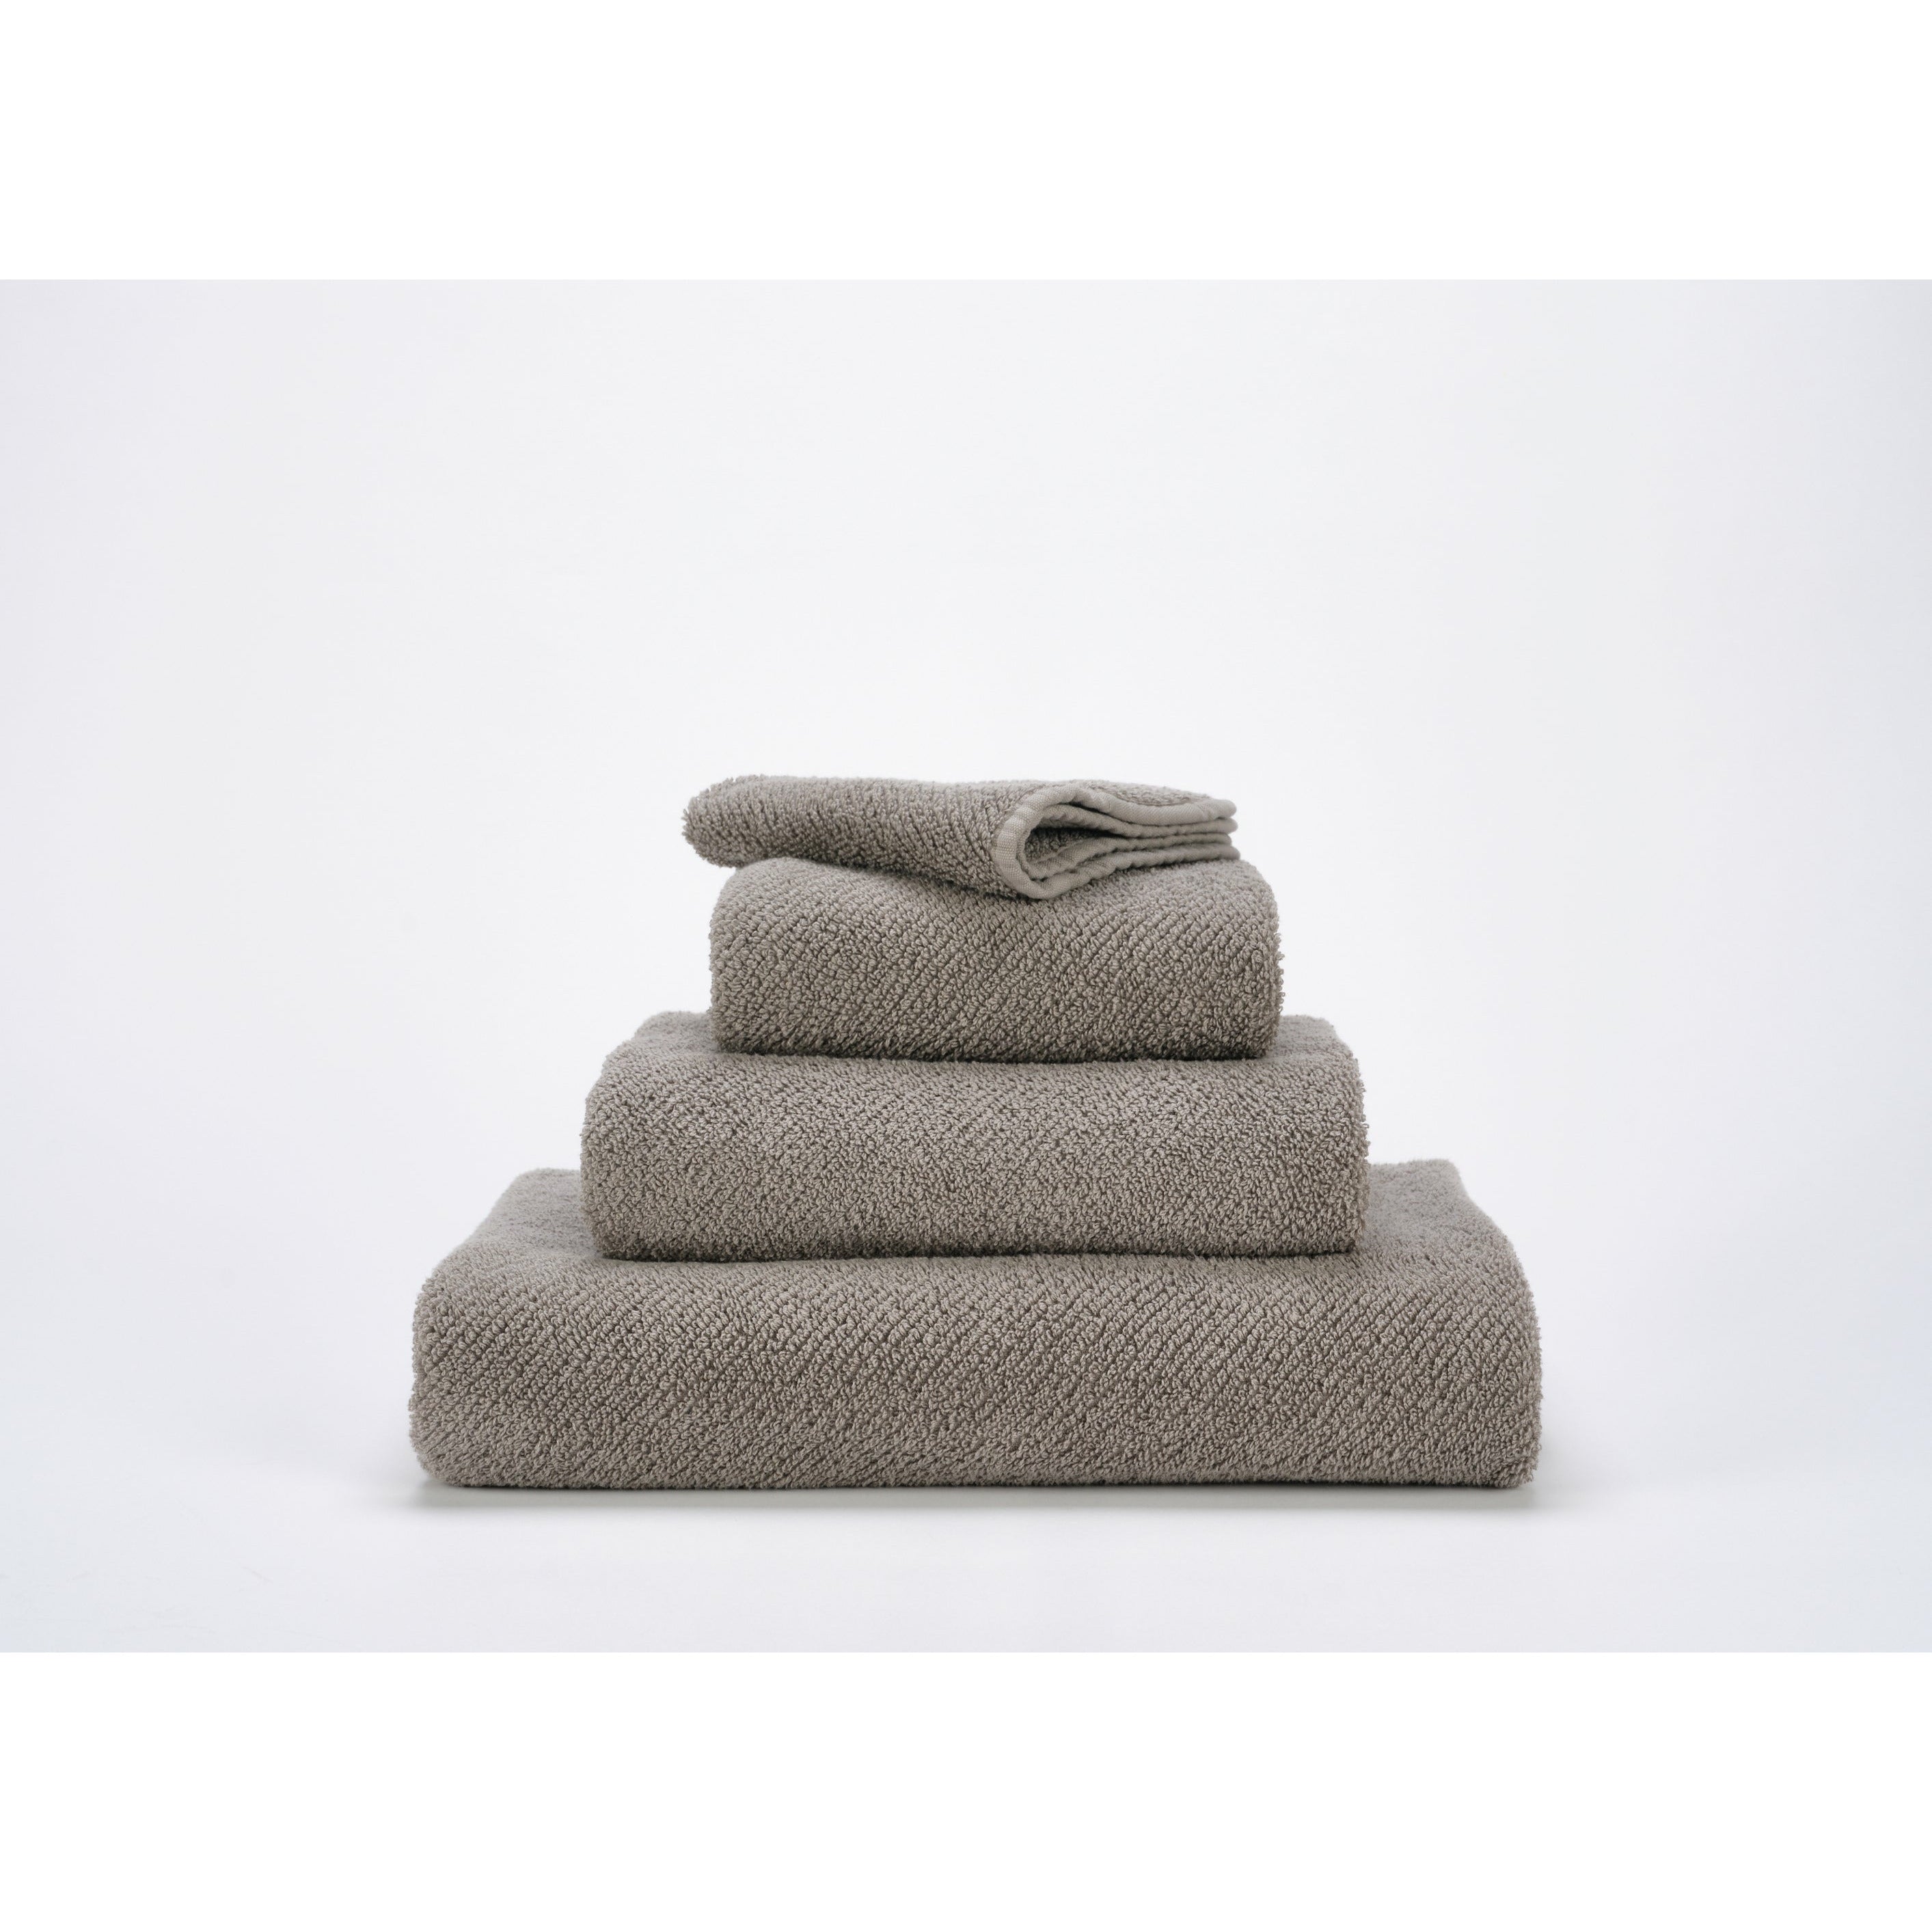 Coyuchi Air Weight Towel Bath Sheet Review 2021